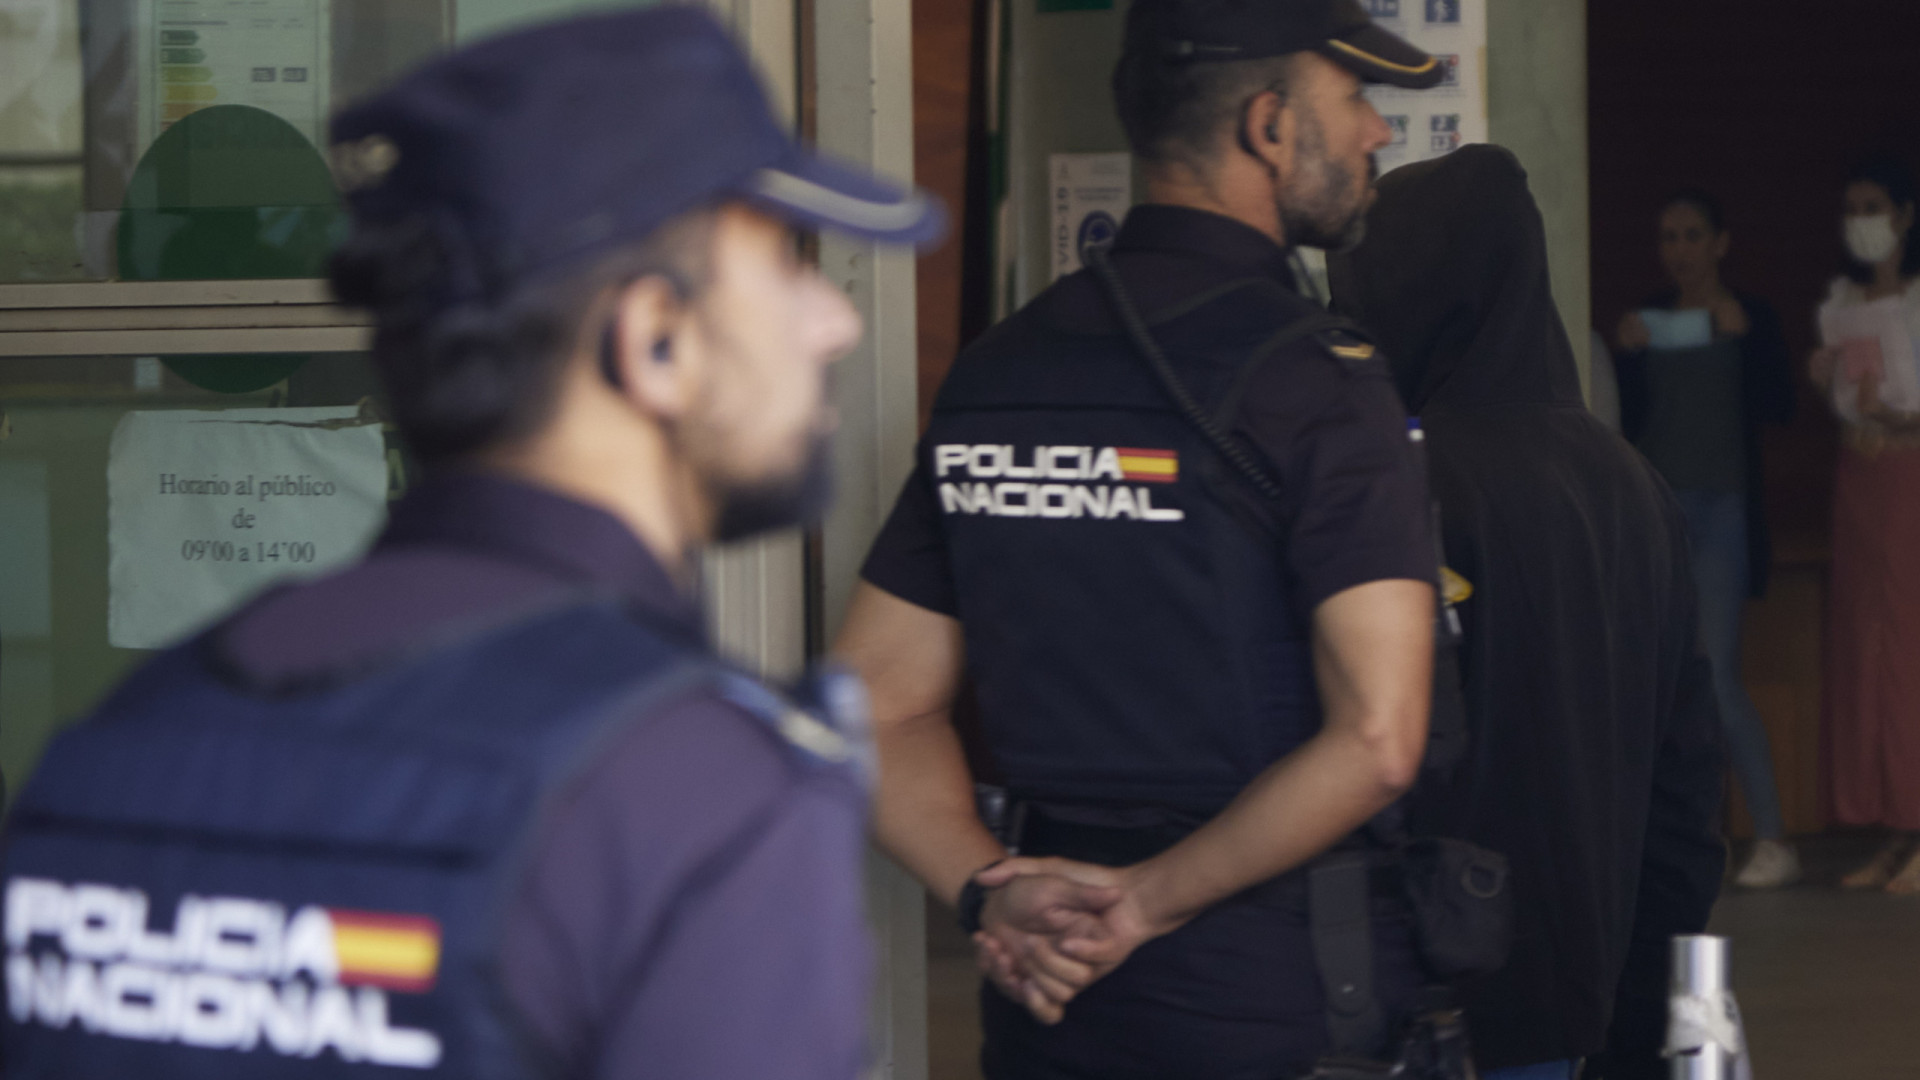 Polícia militar detido após prender mulher em quarto (e chantageá-la)